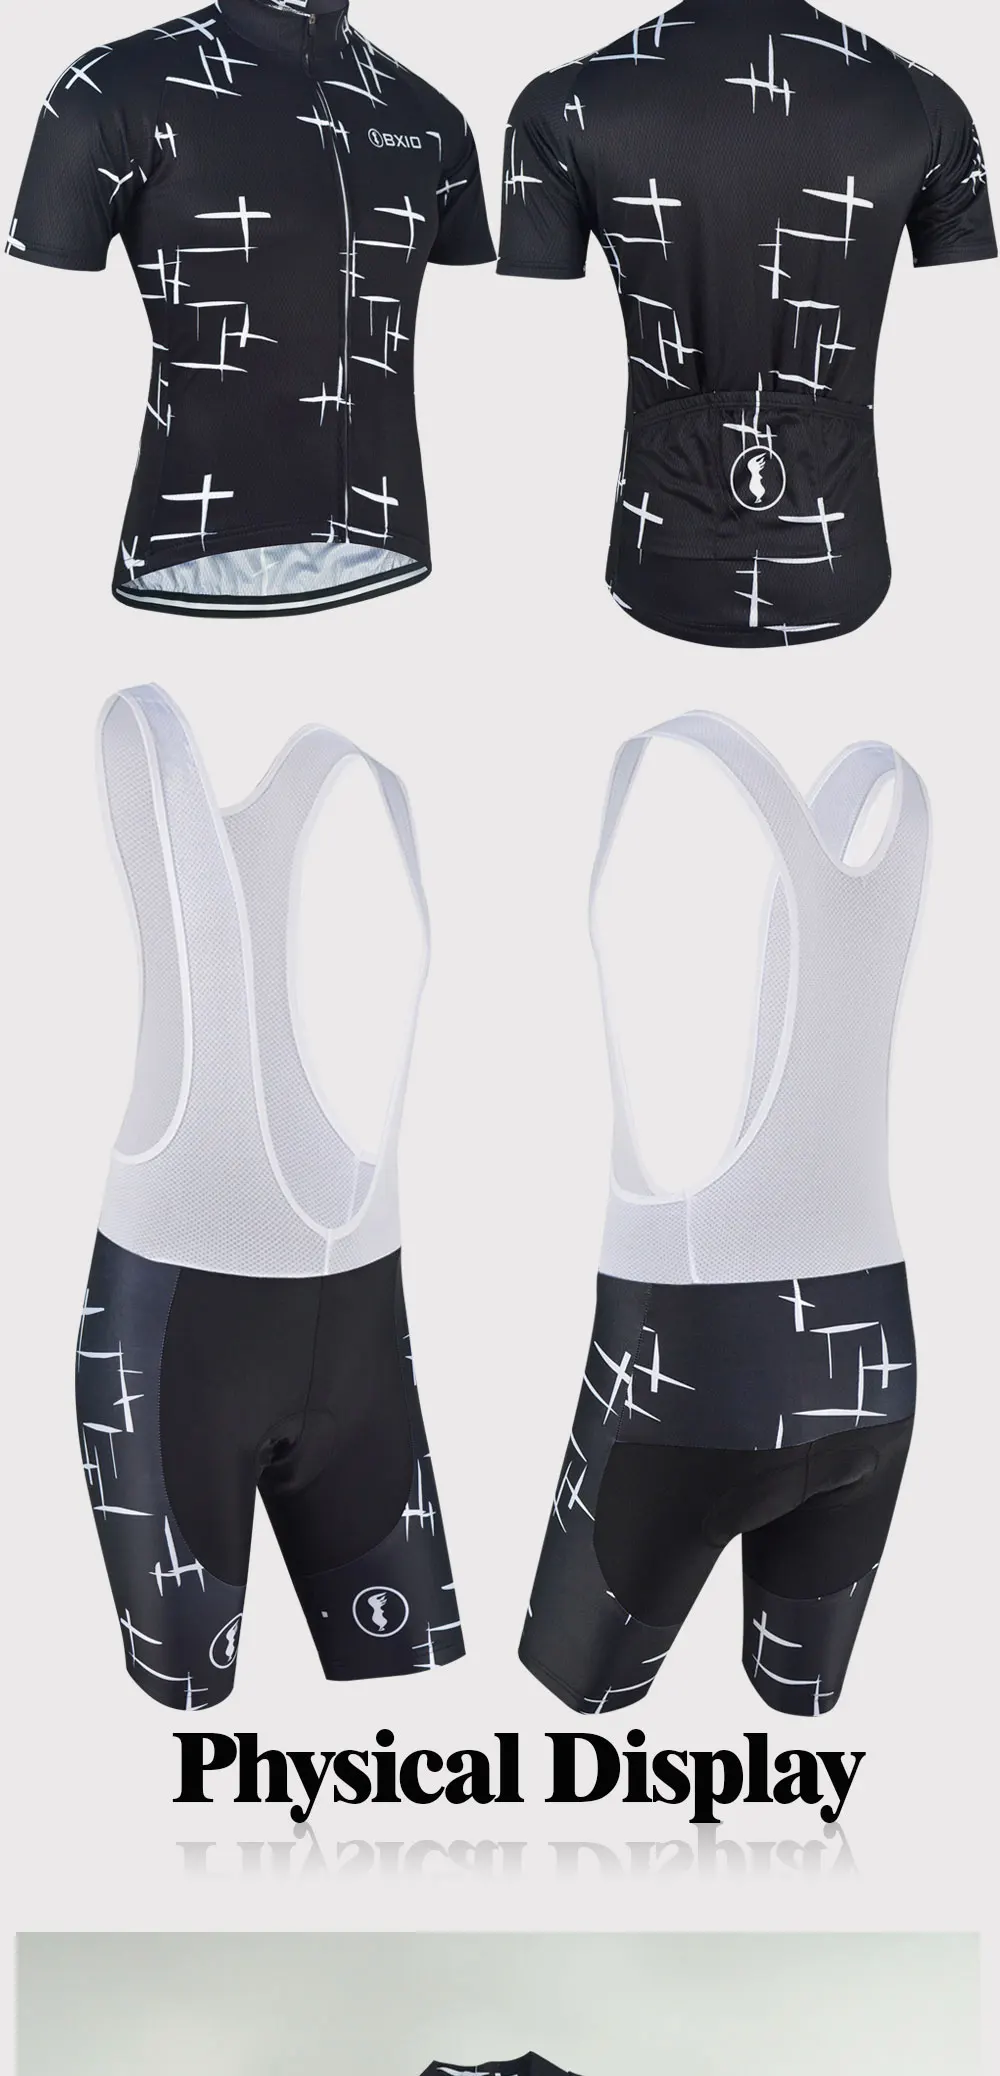 BXIO Велосипедная форма черный велосипед носить мужские велоспорта Ропа Ciclismo велосипедов Короткая одежда летом езда Униформа 148